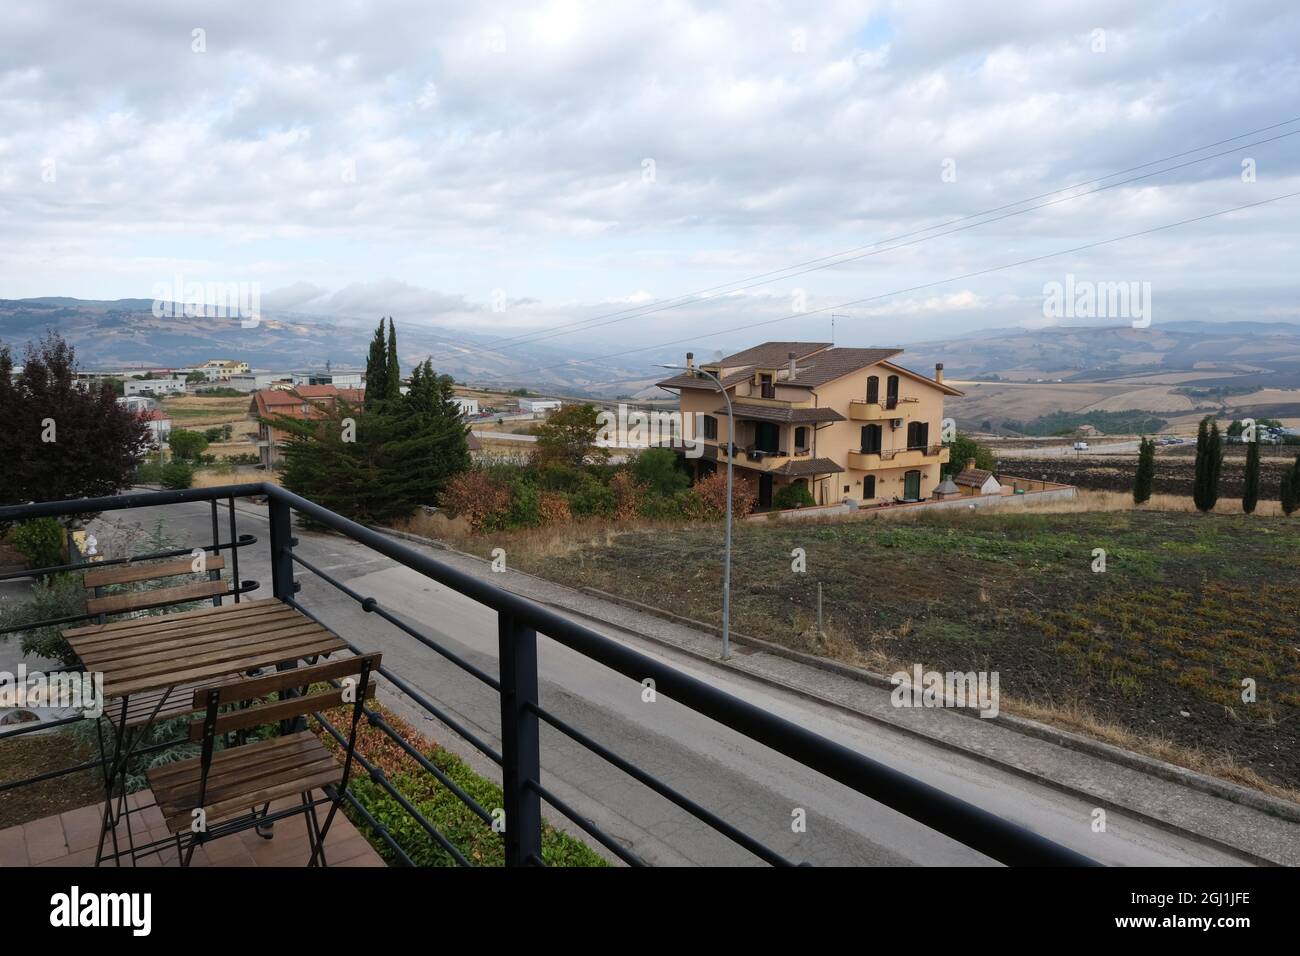 San Bartolomeo à Galdo (Benevento), Italie - Italie du Sud : vue depuis la terrasse de l'hôtel. Vue sur une colline couverte de vignobles, oliveraies Banque D'Images